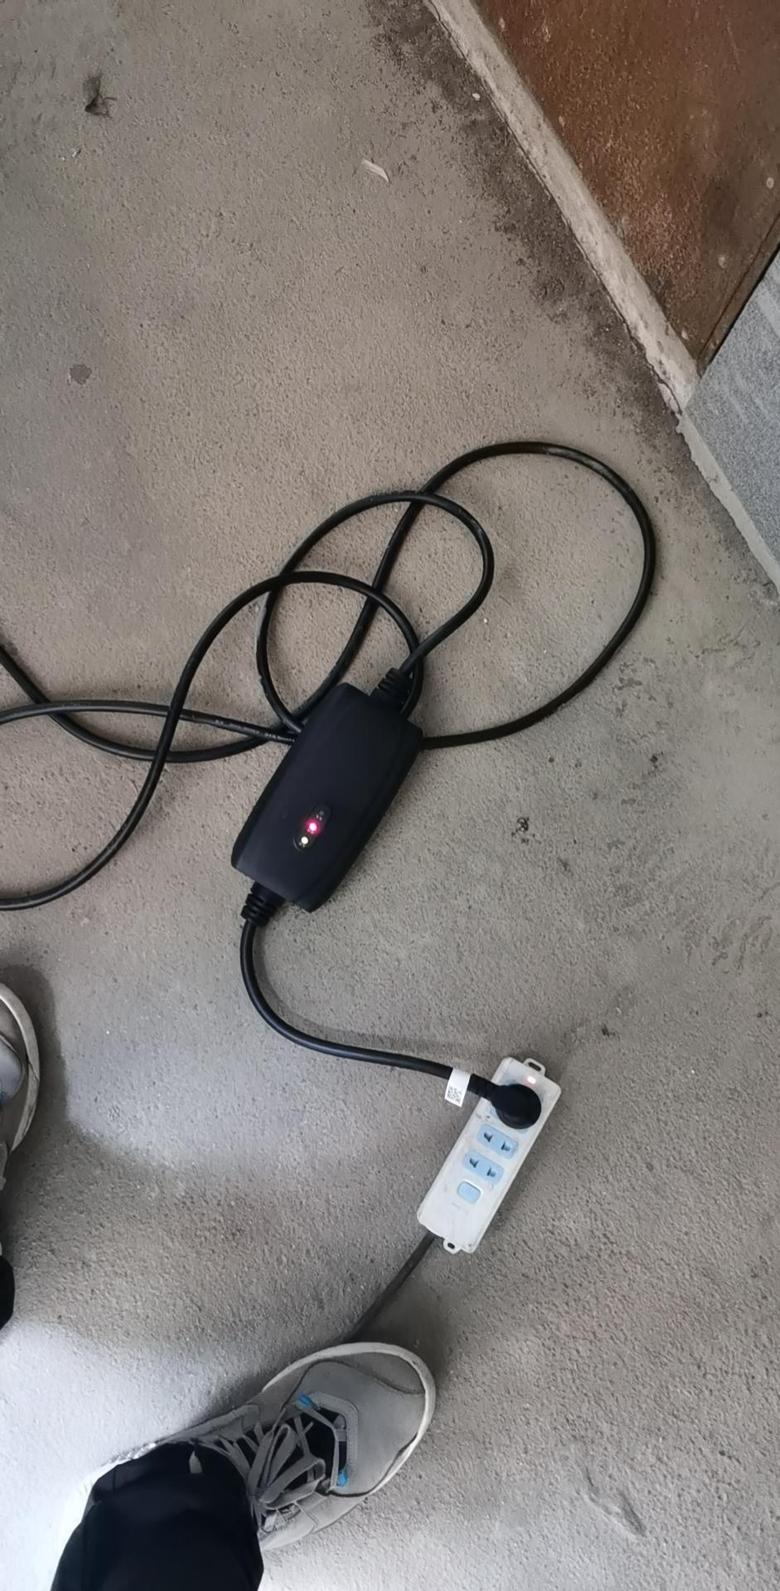 威兰达高性能版 为啥自带的充电器一直充不了电啊！一直显示故障灯。百度说要接地的插座，我连接的是接地的插座啊。